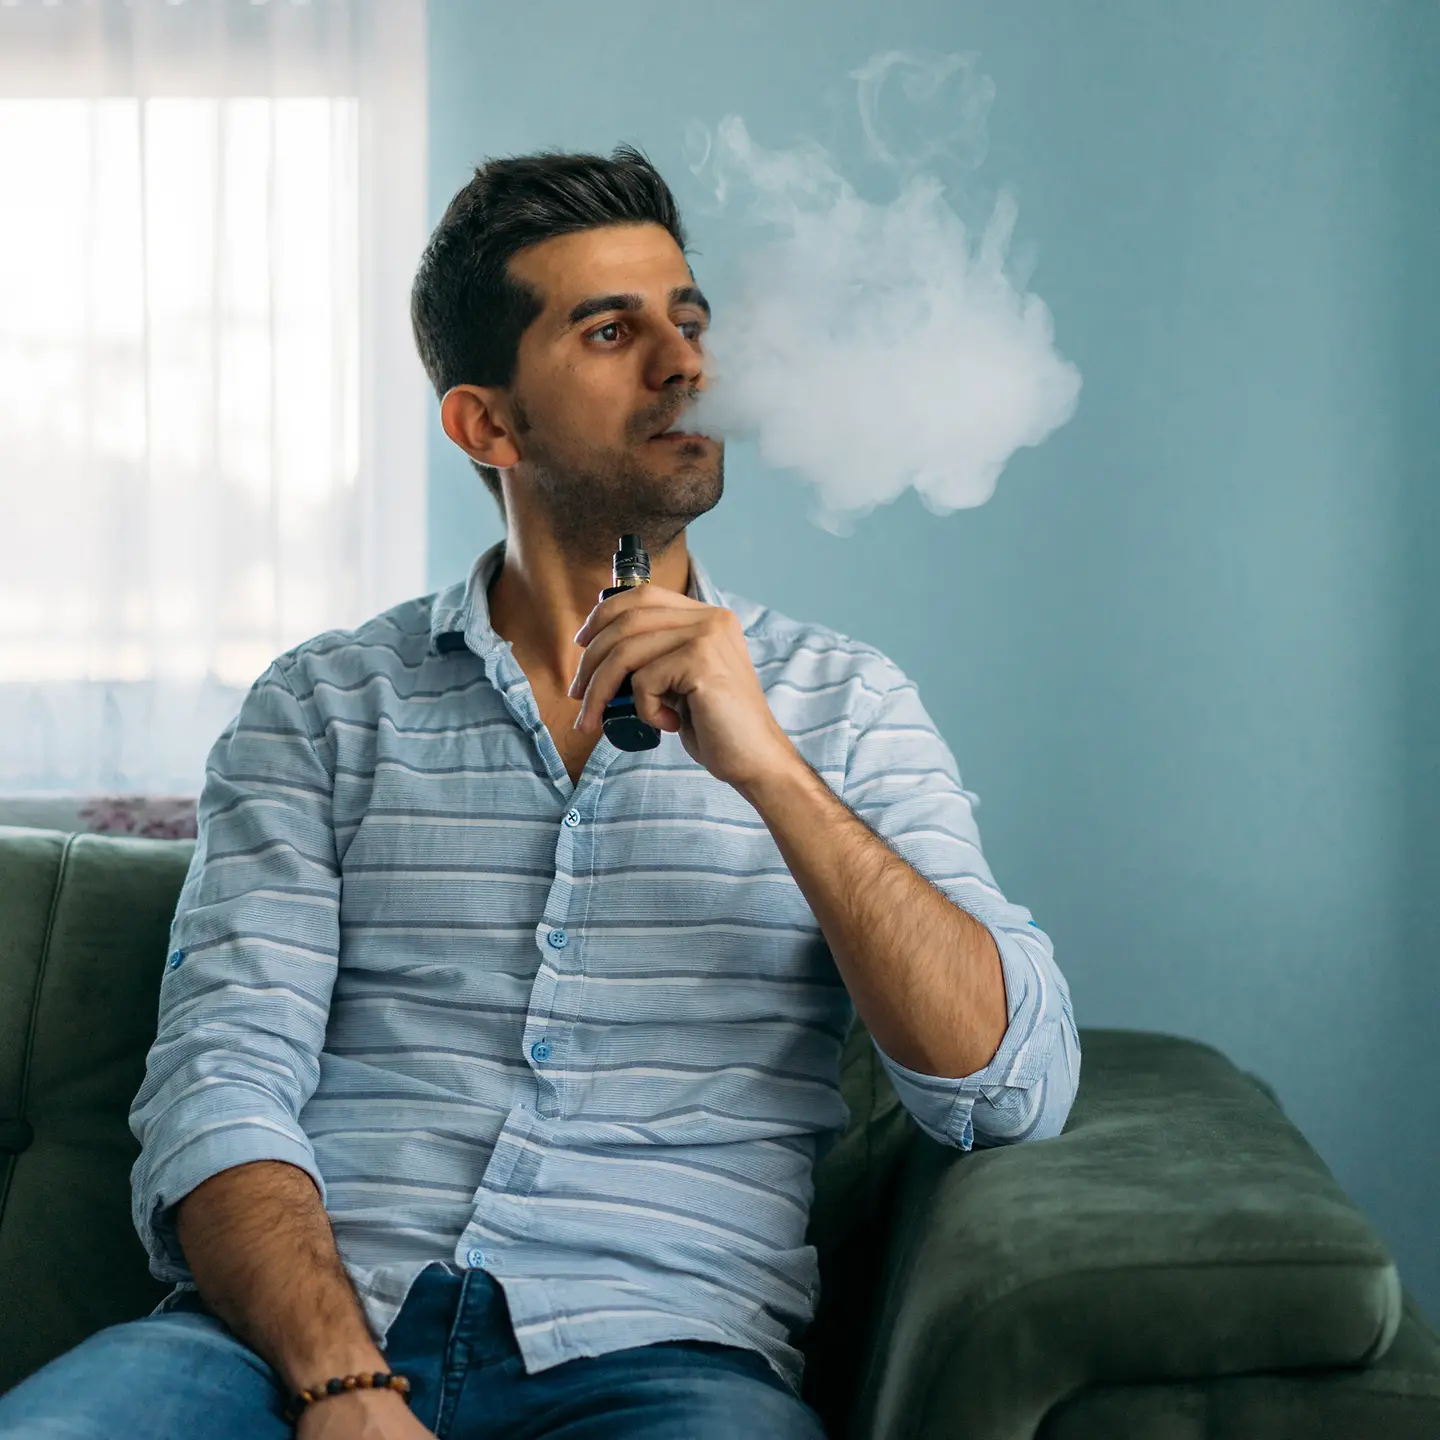 Ein Mann sitzt auf dem Sofa und raucht eine E-Zigarette.